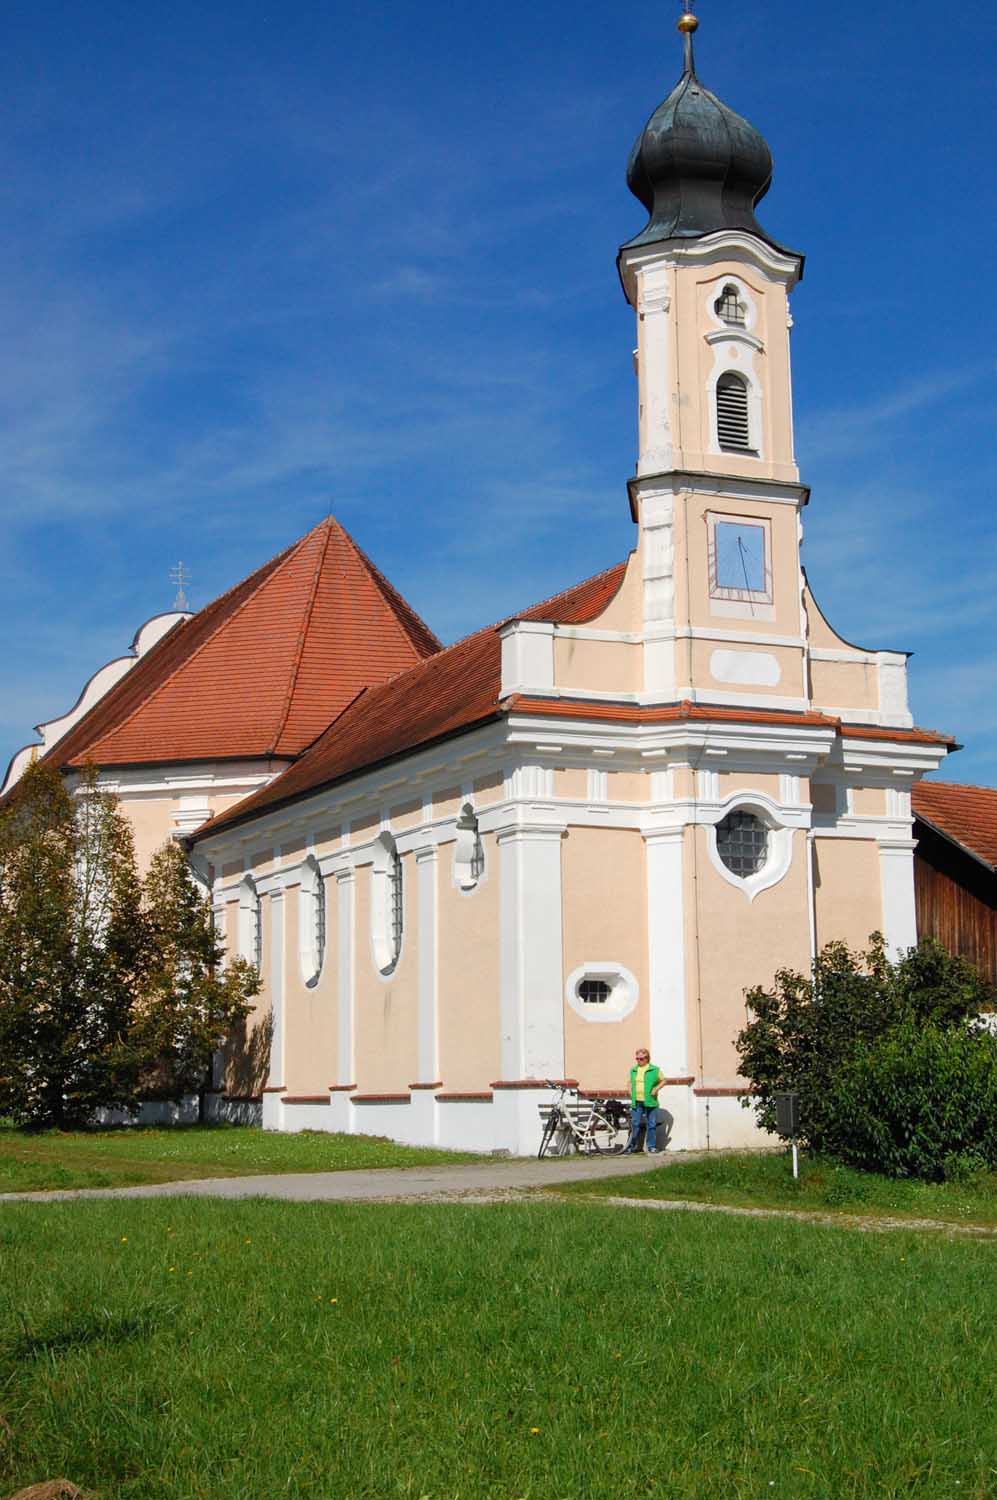 Dreifaltigkeit auf der Öd
Bei der schön gelegenen Wallfahrtskirche kann man deutlich den älteren Teil mit dem Turm (vorne) von der Erweiterung unterscheiden.